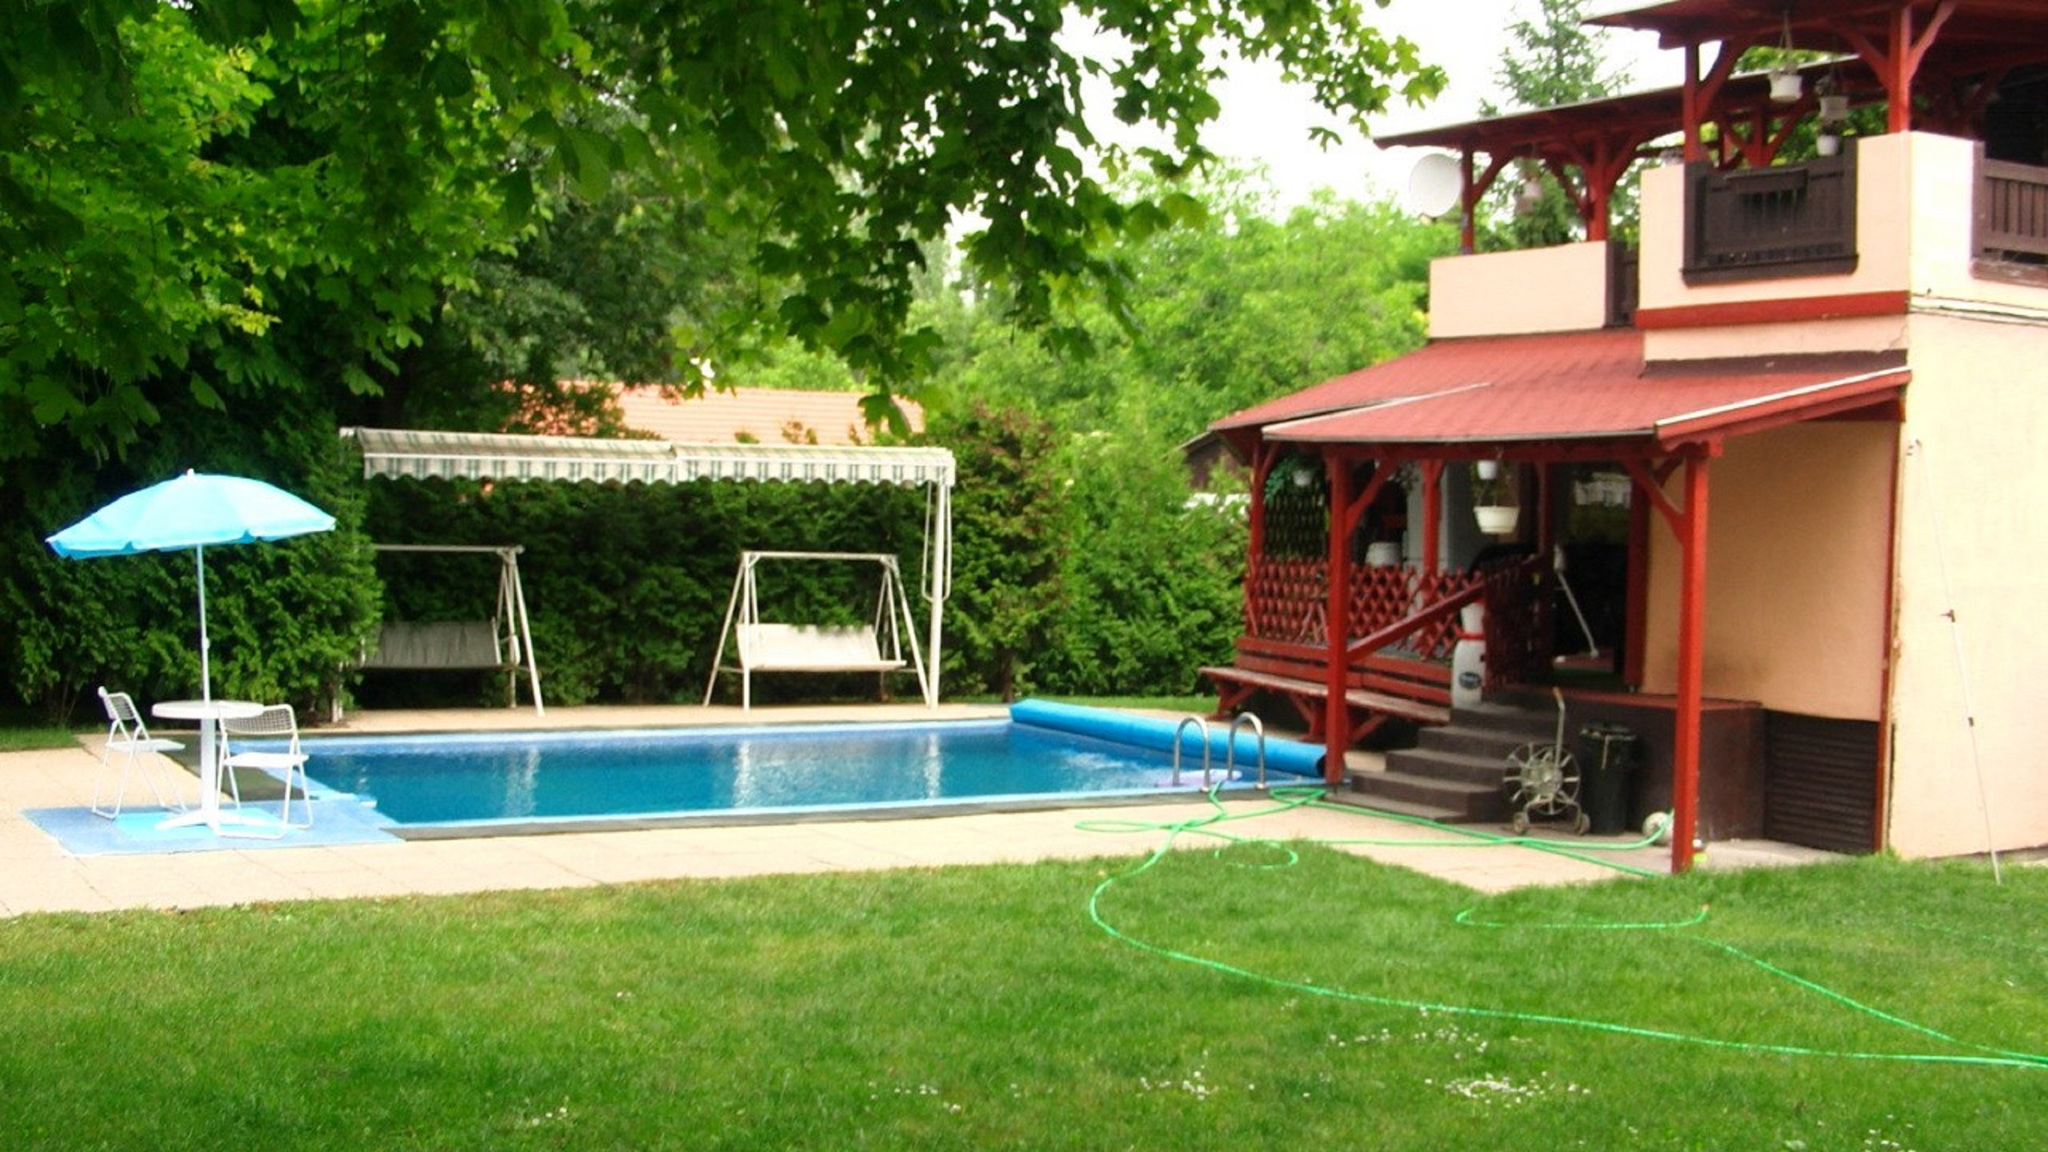 Ferienhaus mit Pool, WLAN und Kliaamlage Ferienhaus  Transdanubien Mitte